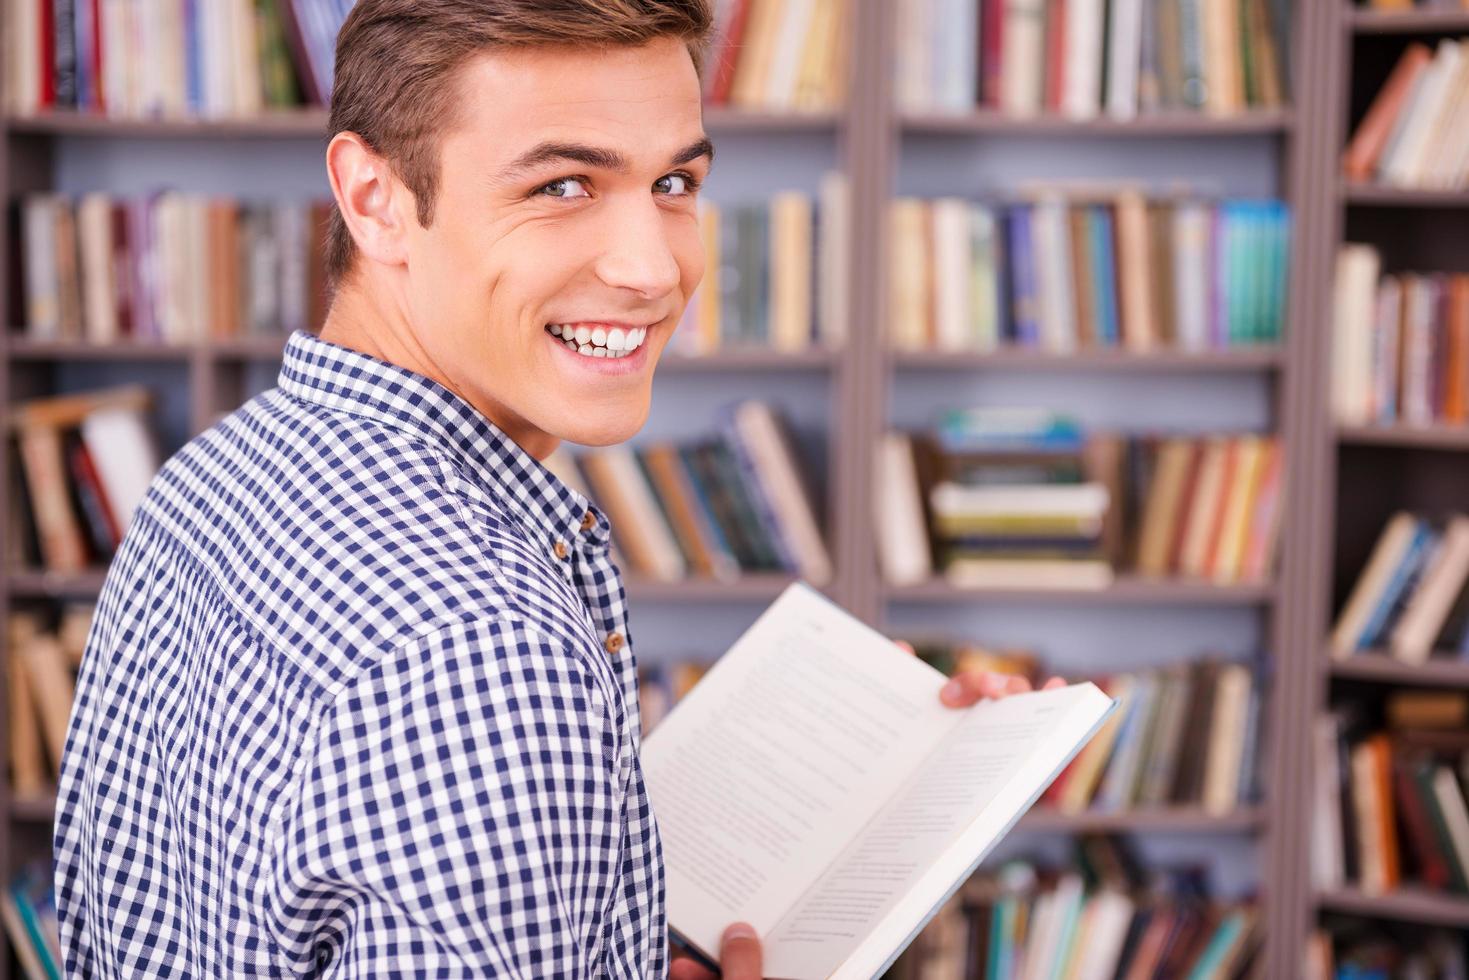 ratón de biblioteca feliz. vista trasera de un joven feliz sosteniendo un libro y mirando por encima del hombro mientras está de pie contra la estantería foto